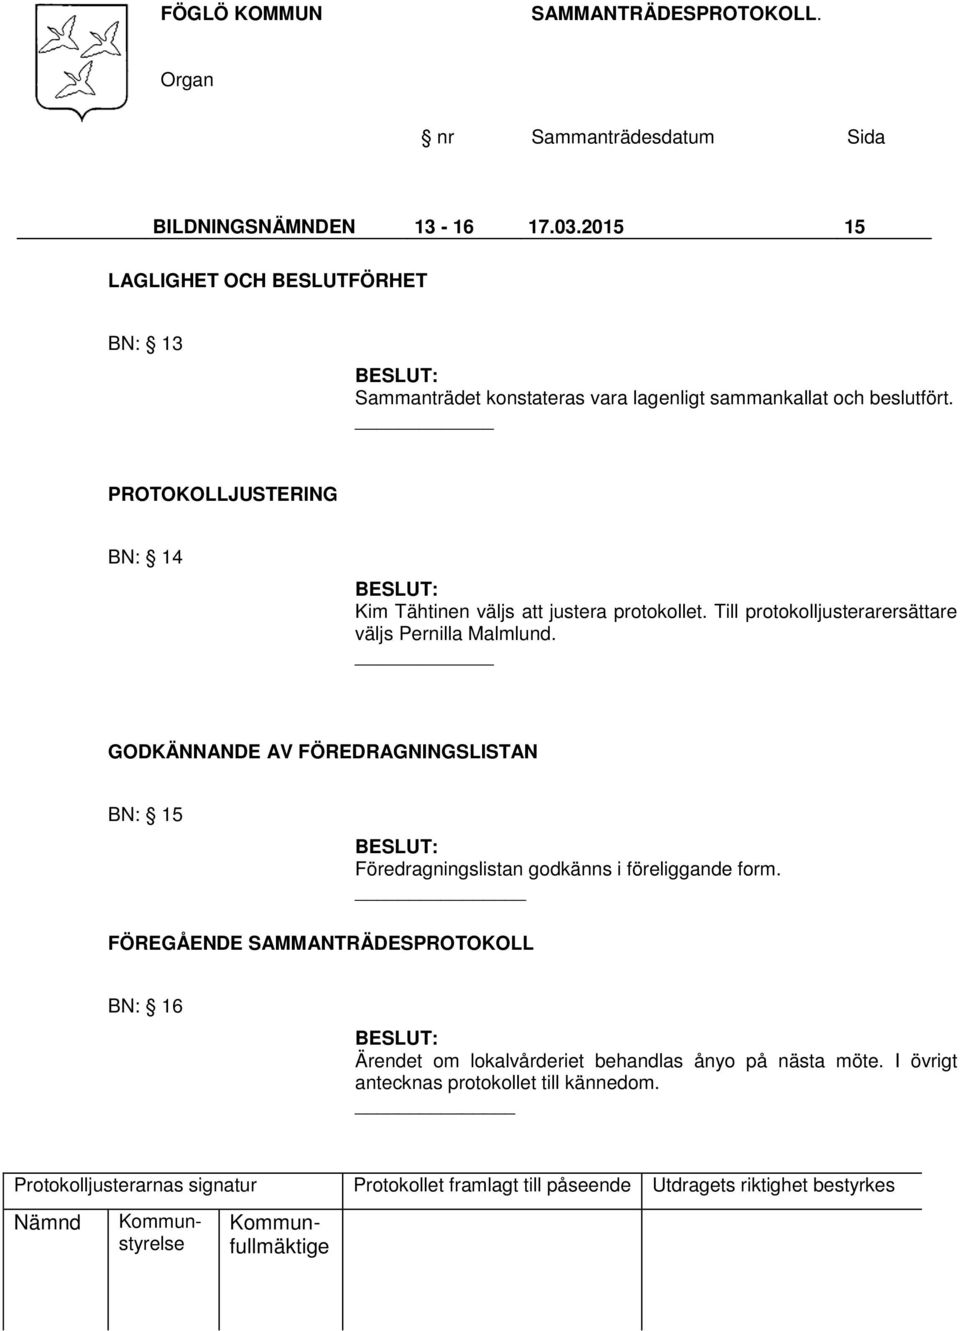 PROTOKOLLJUSTERING BN: 14 Kim Tähtinen väljs att justera protokollet. Till protokolljusterarersättare väljs Pernilla Malmlund.